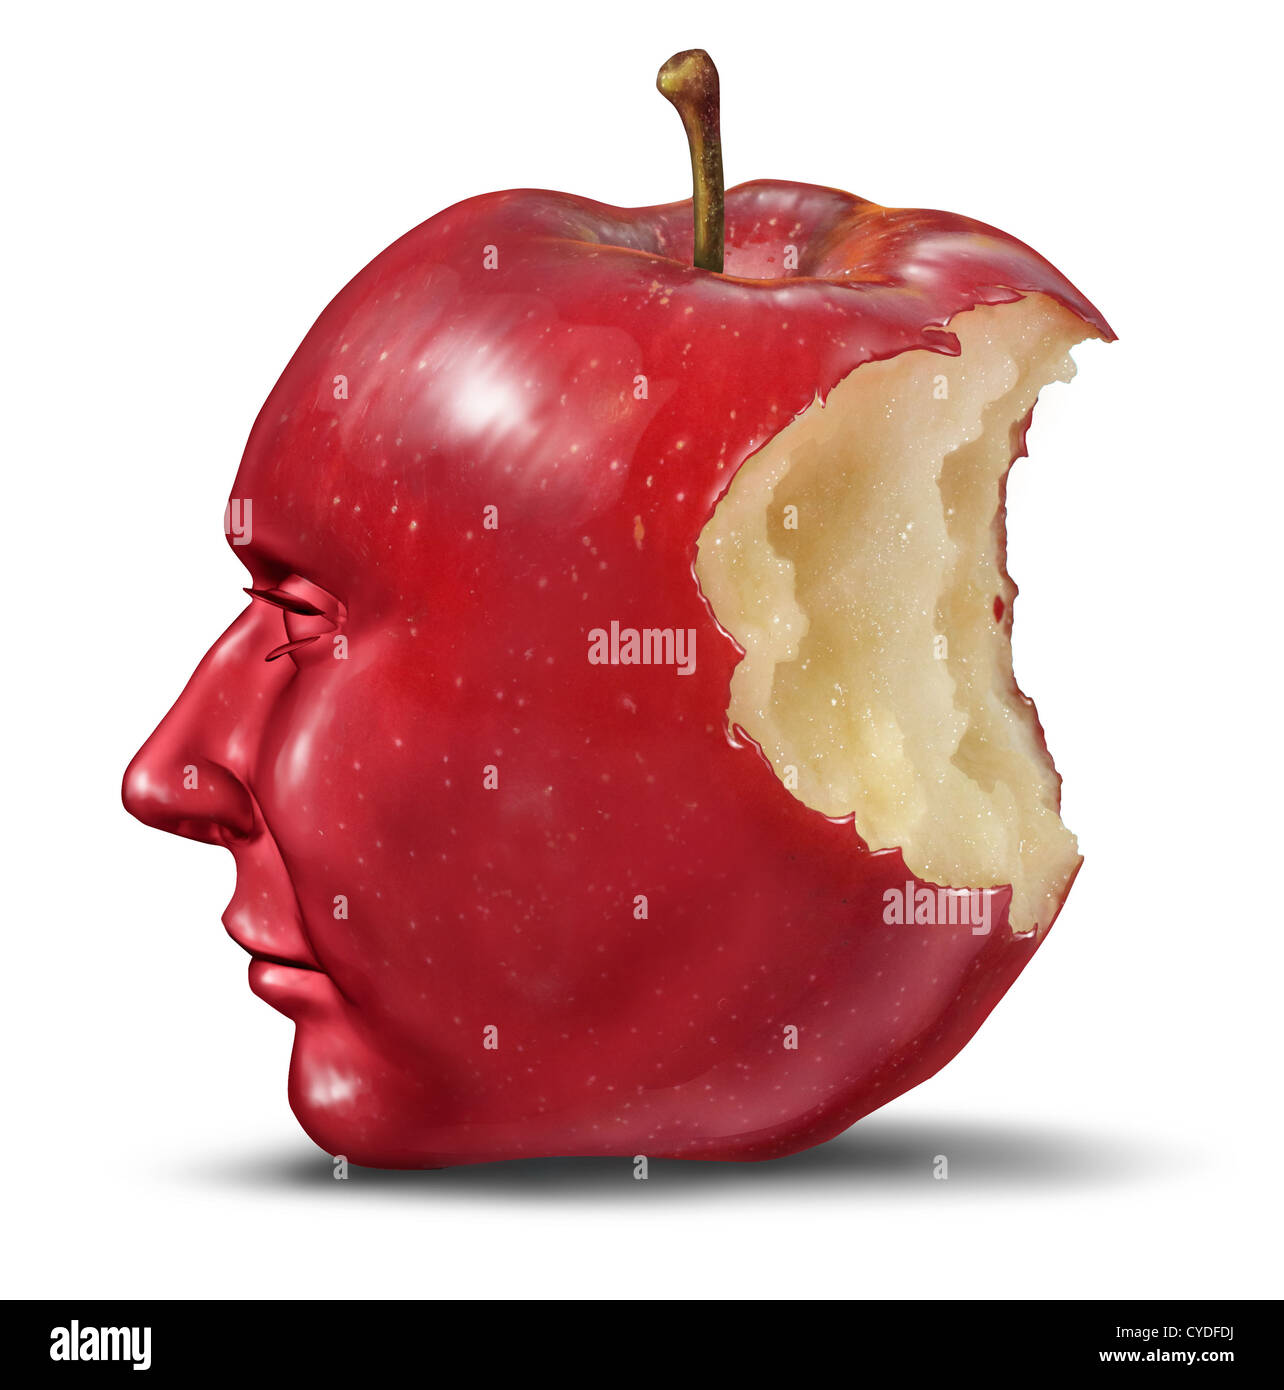 La depressione e la solitudine con testa umana nella forma di una mela con un morso mangiato il frutto rosso come una cura di salute symbo Foto Stock